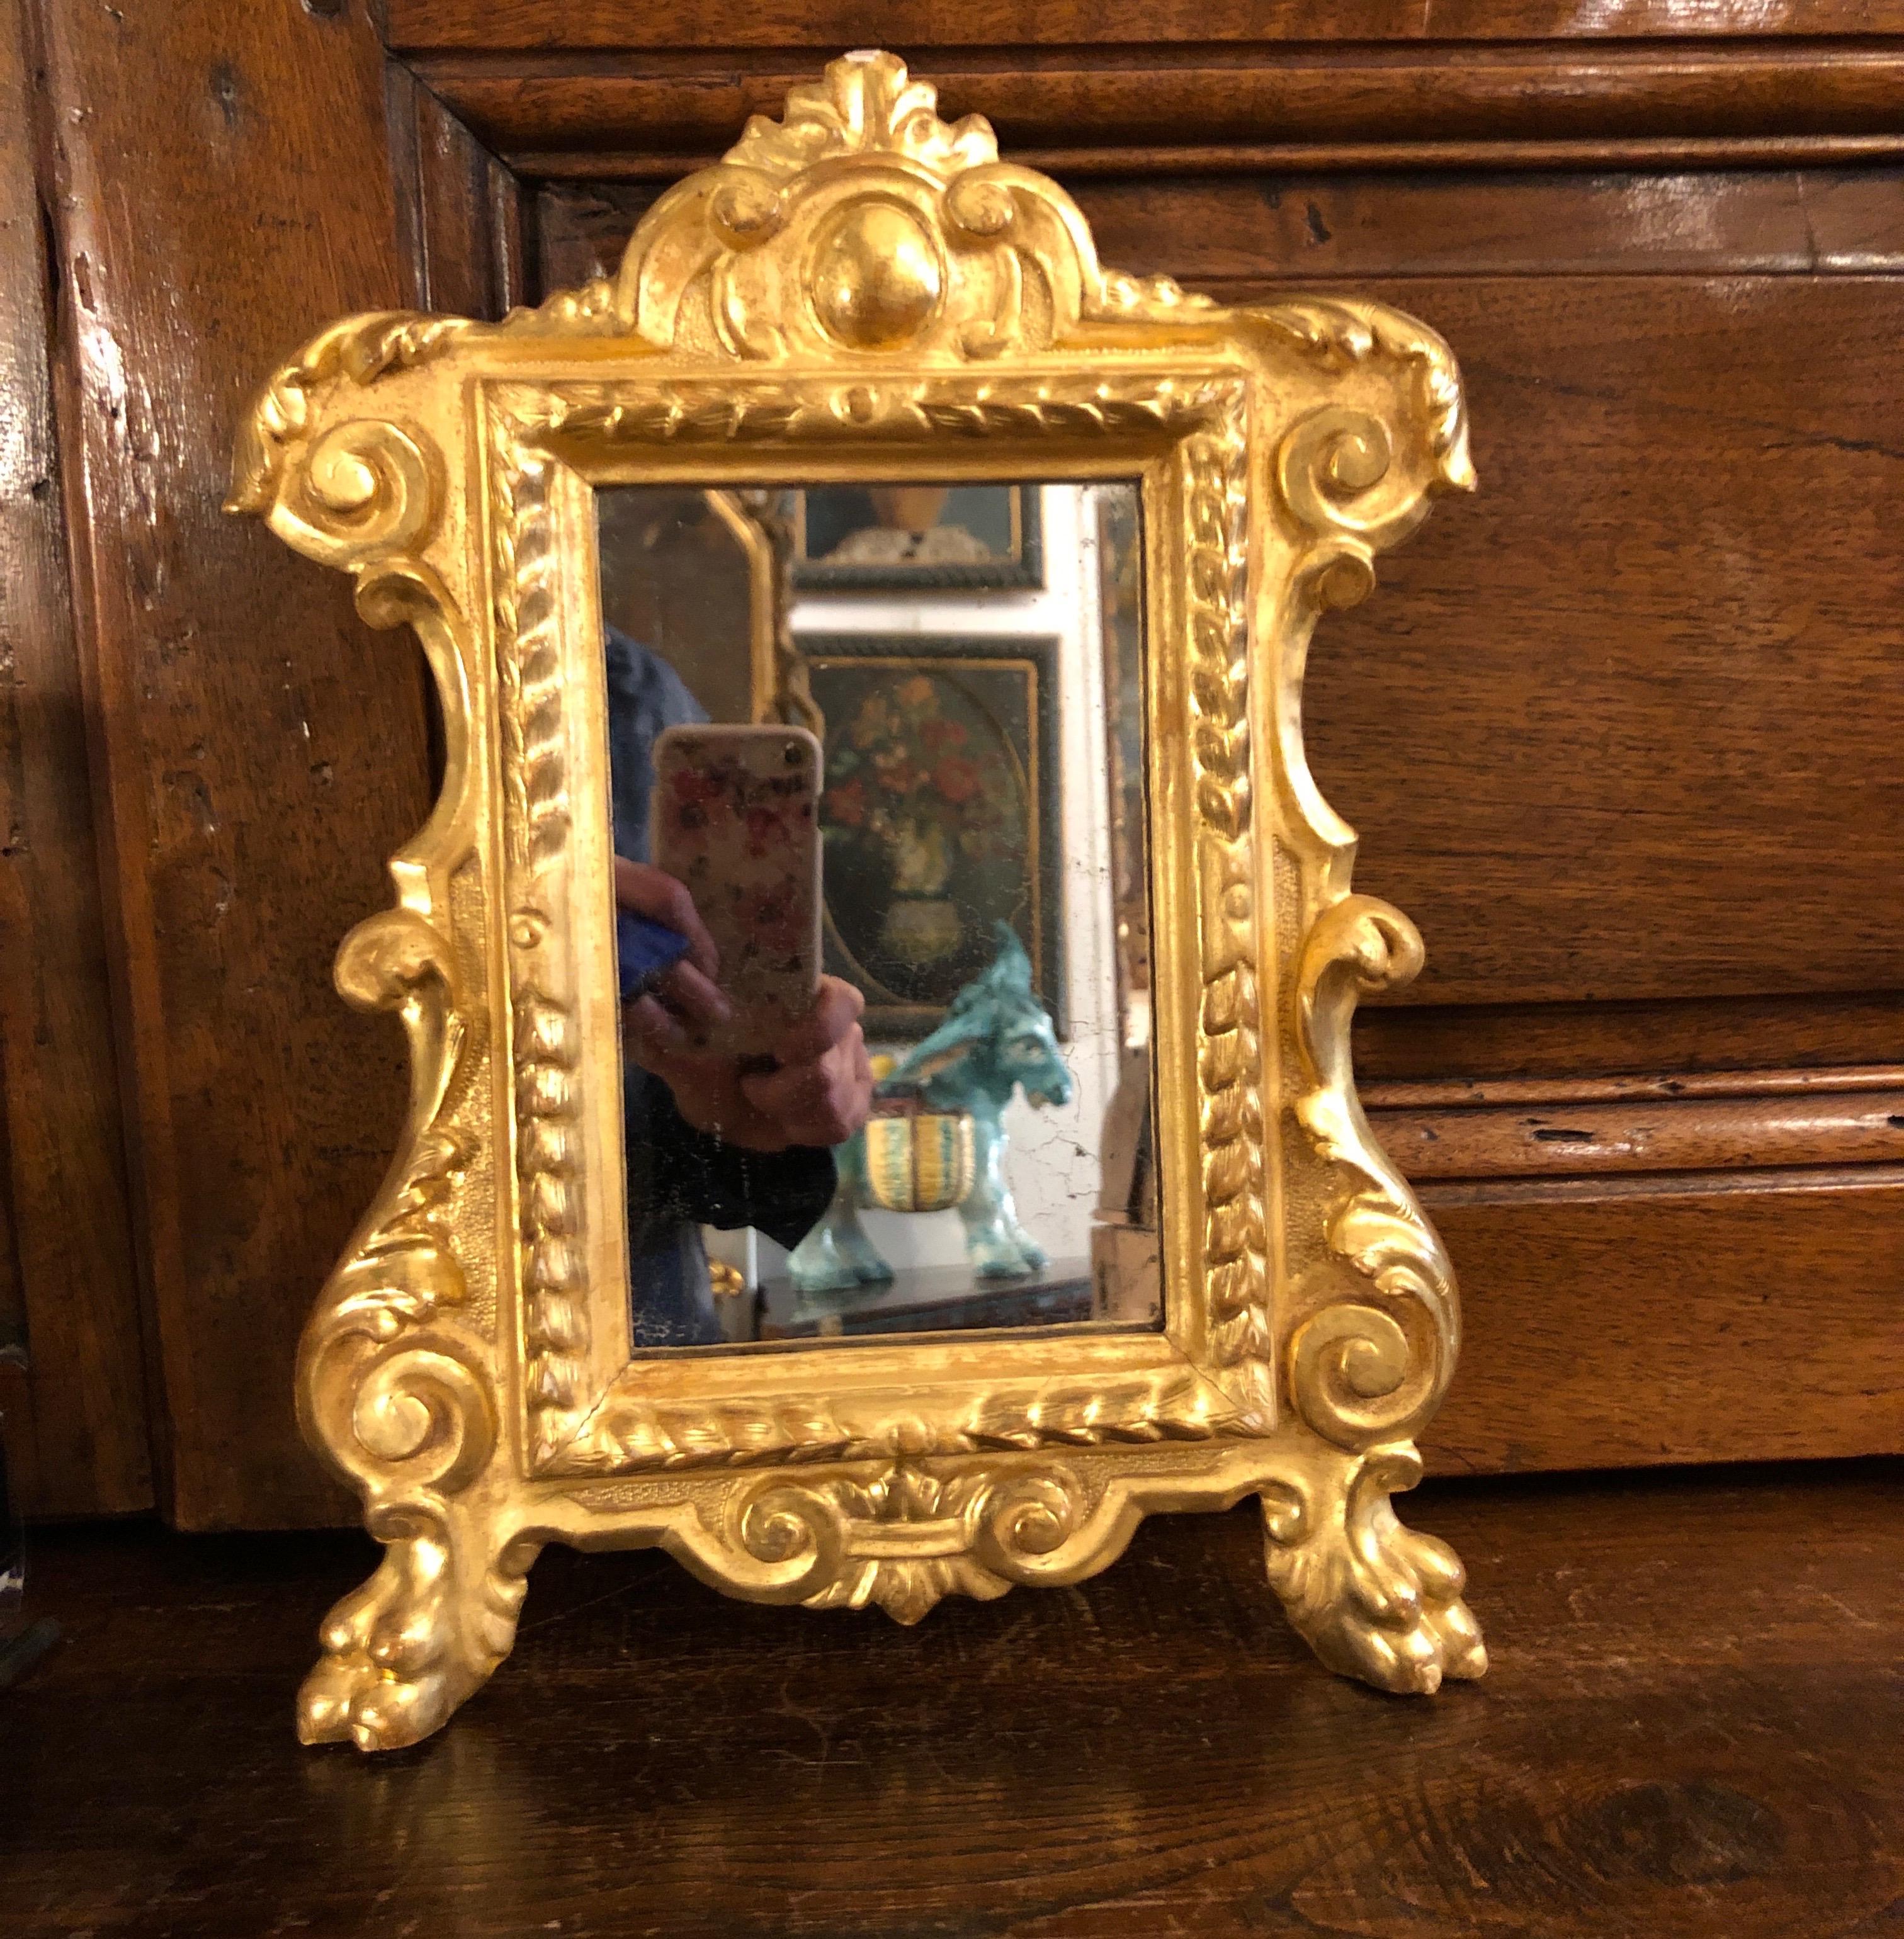 Dall'Italia, un piccolo specchio con cornice intagliata e dorata in foglia dell'inizio 1800.  Questa piccola cornice è un arredo d'altare, un tipoco arredo liturgico italiano cosiddetto cartagloria o cantagloria.
Di forma sagomata, con un ricco